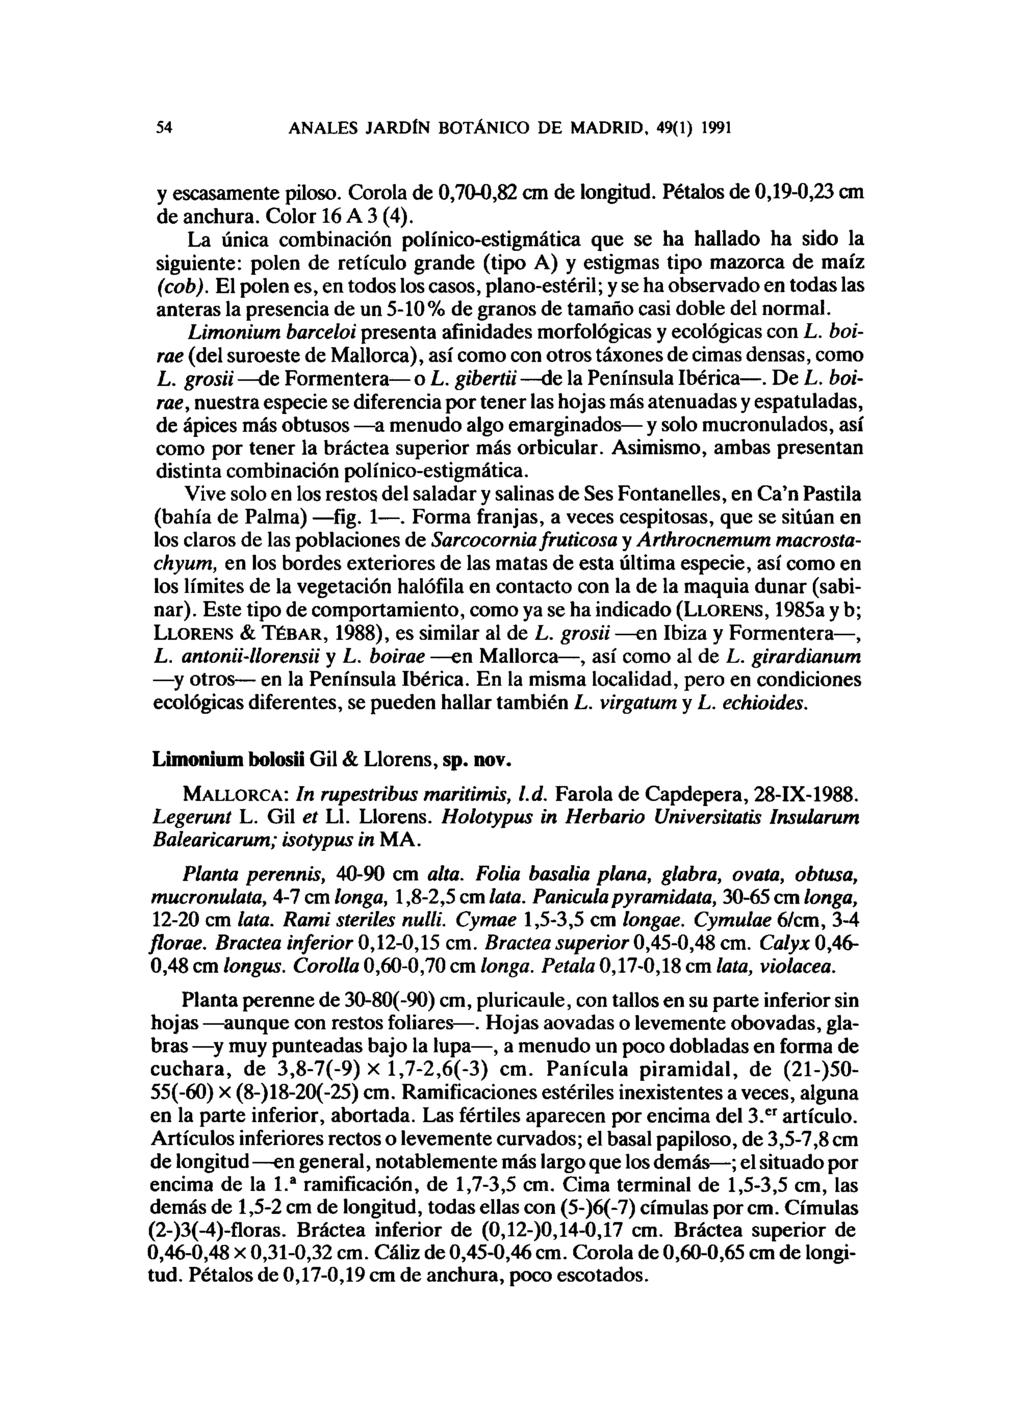 54 ANALES JARDÍN BOTÁNICO DE MADRID, 49(1) 1991 y escasamente piloso. Corola de 0,70-0,82 cm de longitud. Pétalos de 0,19-0,23 cm de anchura. Color 16 A 3 (4).